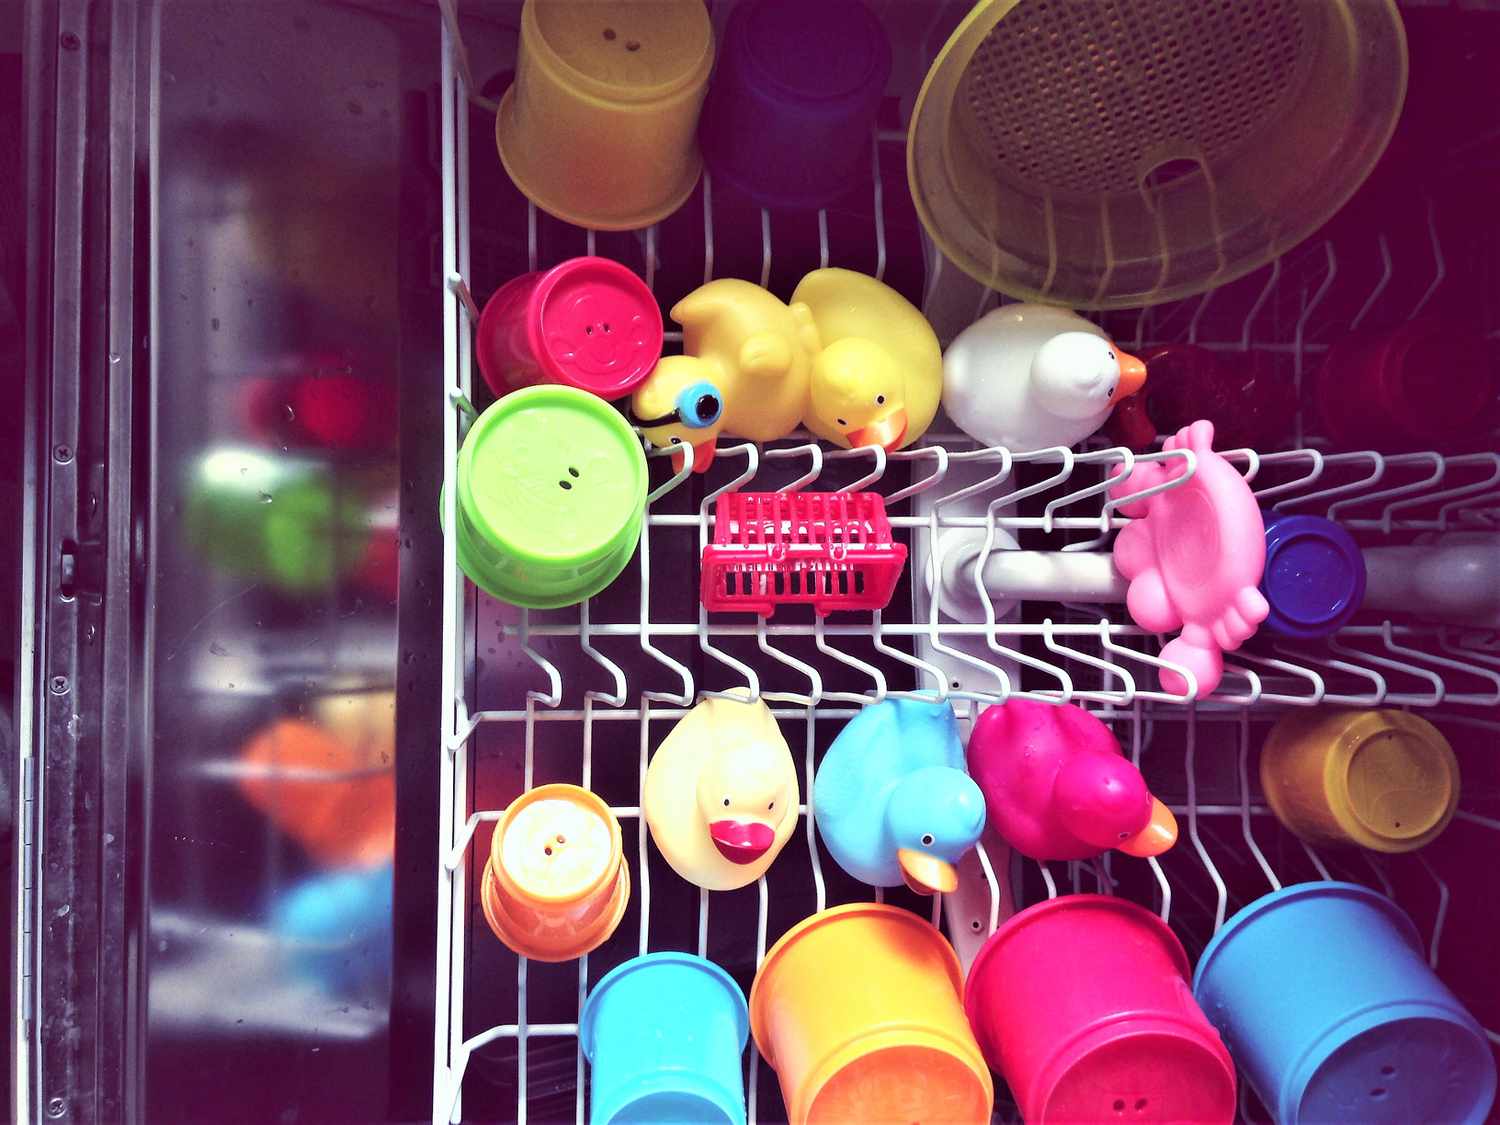 40 überraschende Dinge, die Sie in Ihrer Spülmaschine reinigen können